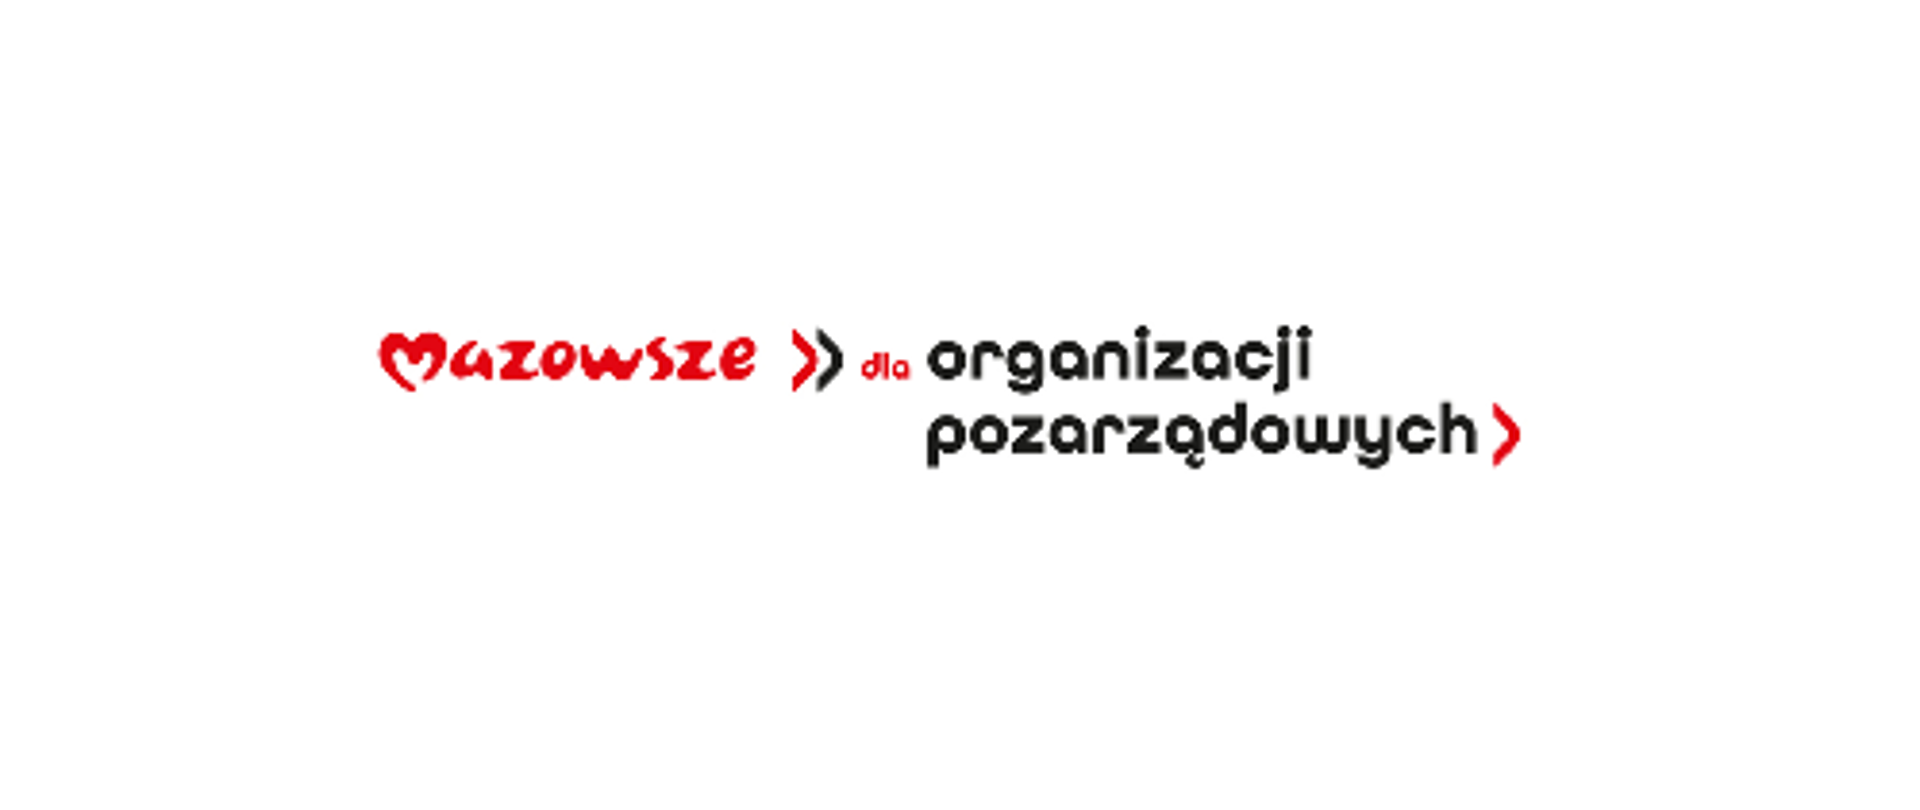 logo z napisem "Mazowsze dla organizacji pozarządowych"